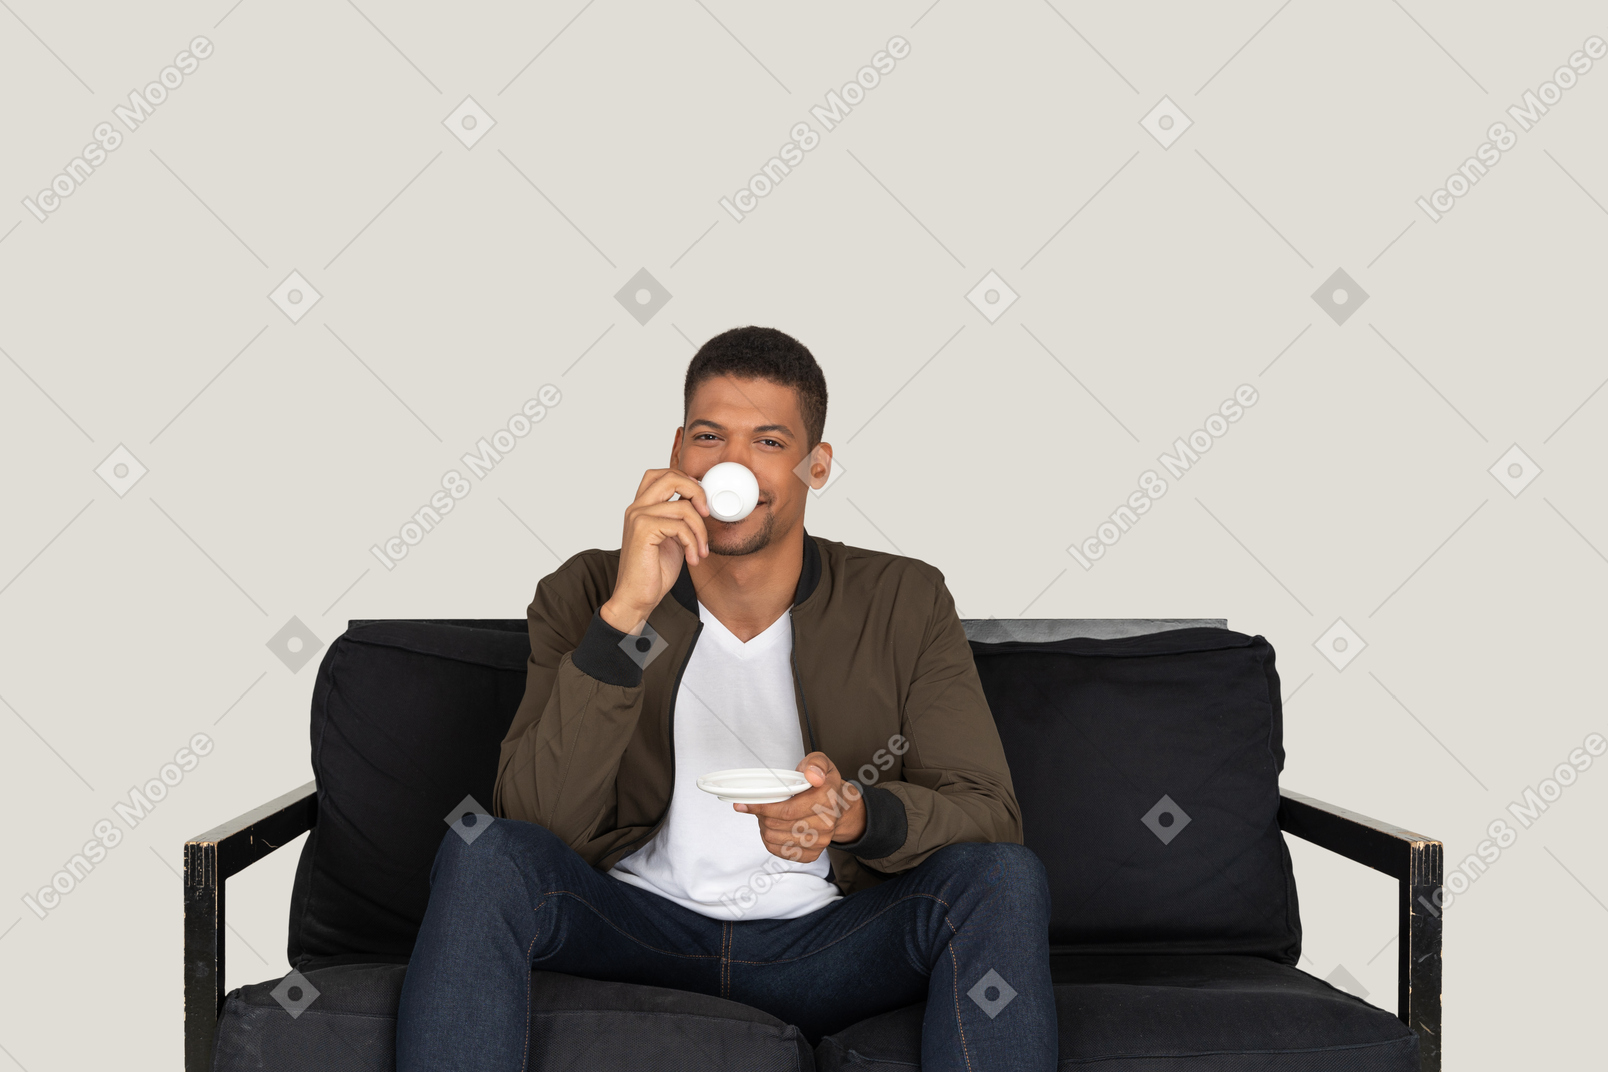 Vista frontale di un giovane sognatore seduto su un divano mentre beve caffè